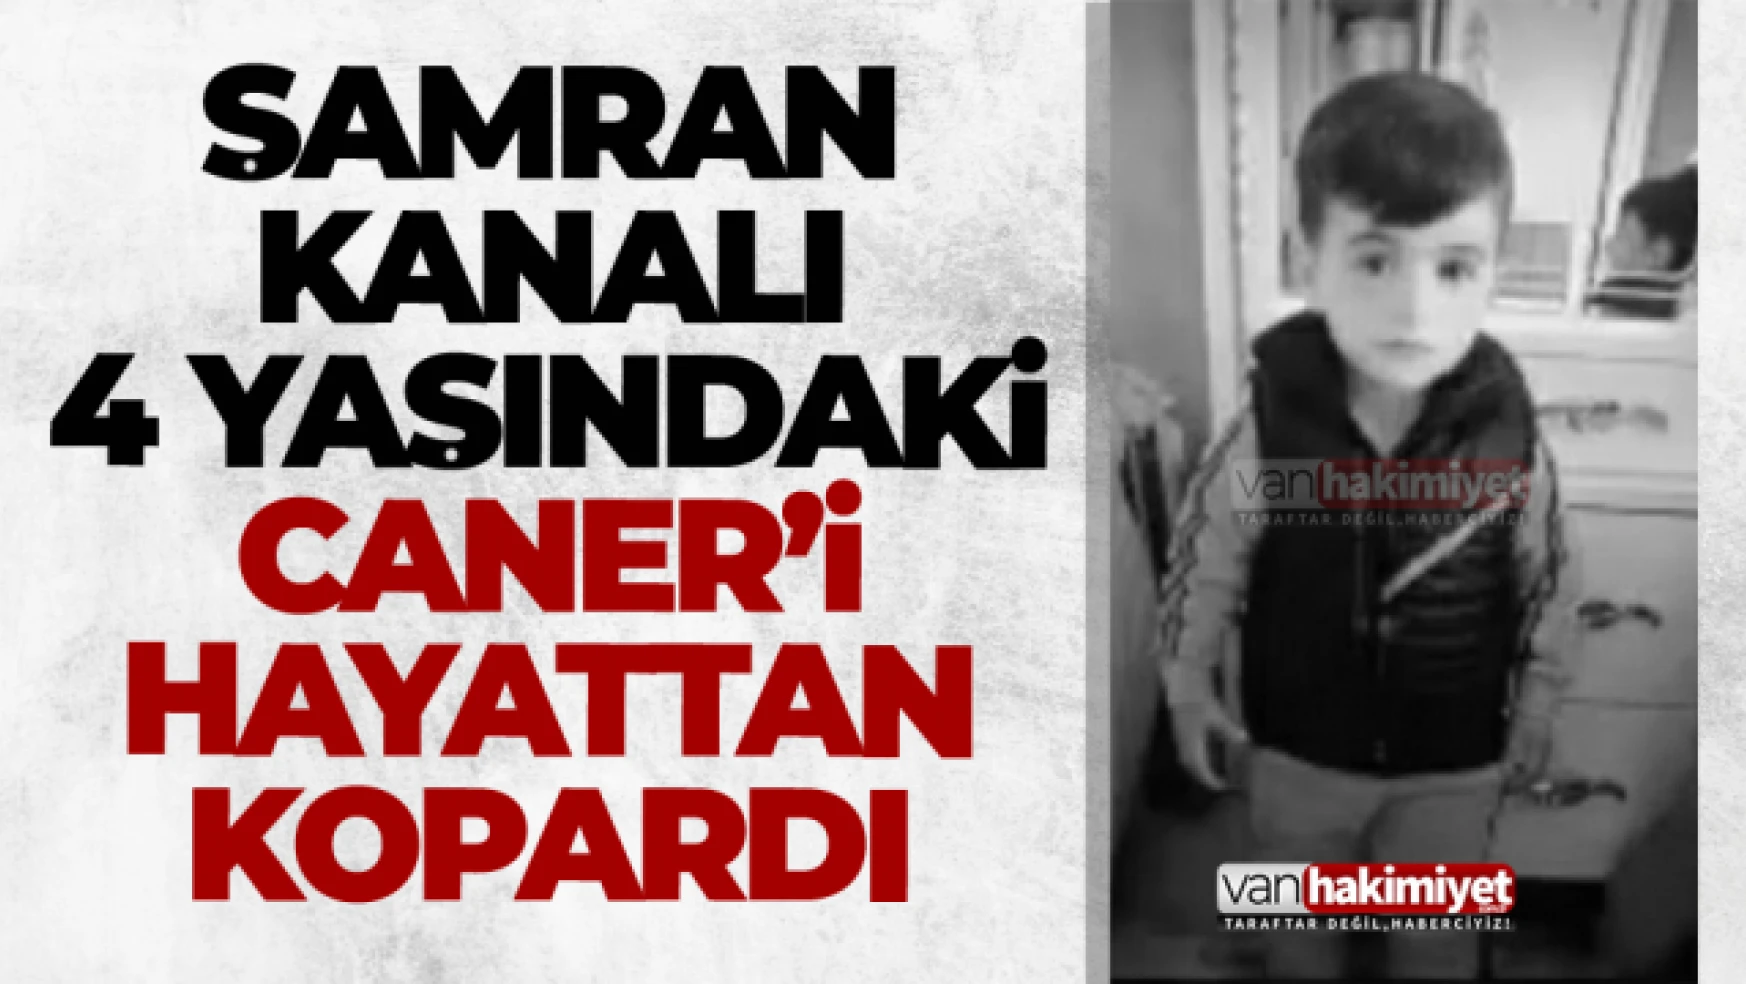 Şamran kanalı 4 yaşındaki Caner'i hayattan kopardı